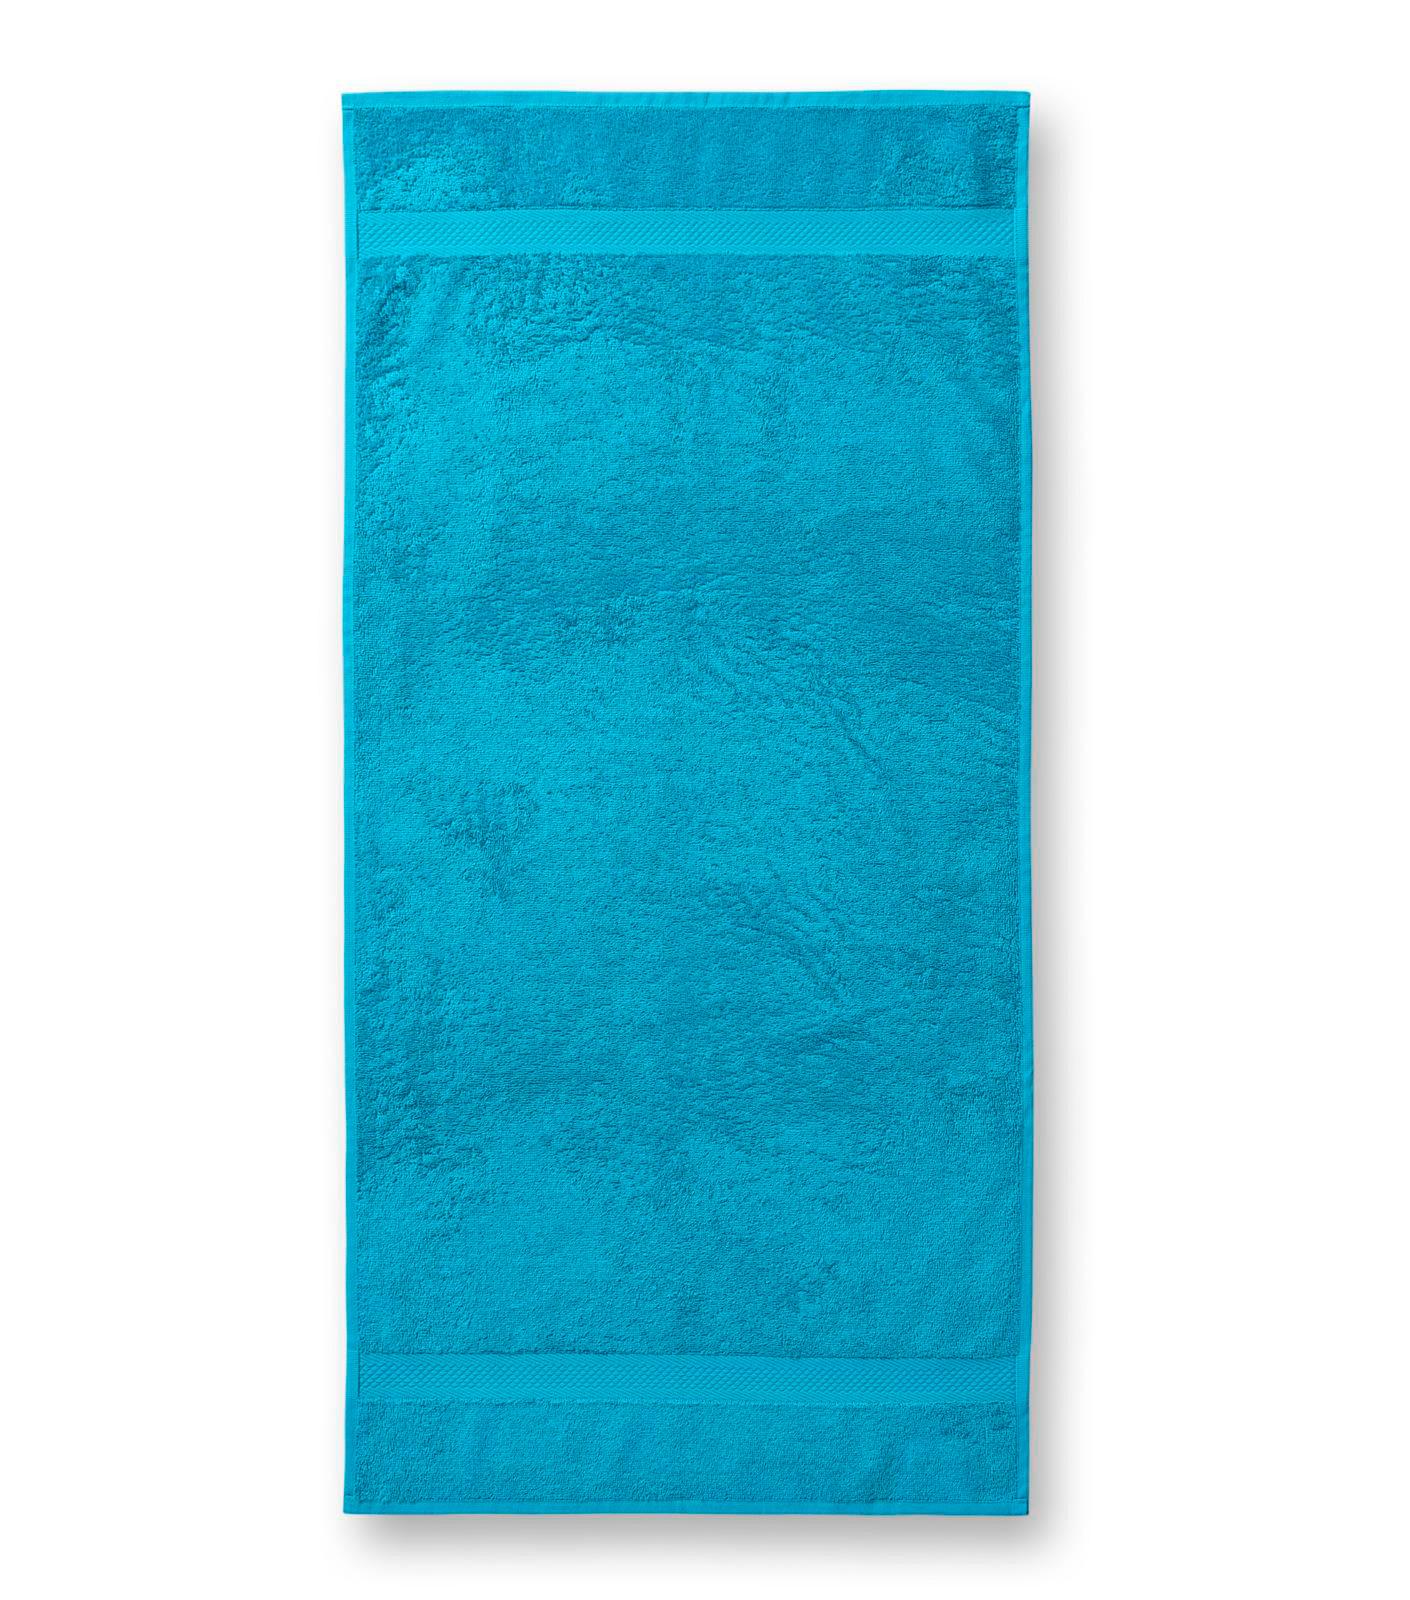 Terija cilpiņu auduma dvielis. Izmēr 50 x 100 cm. Atoll blue krāsā ar bodņu abos galos.